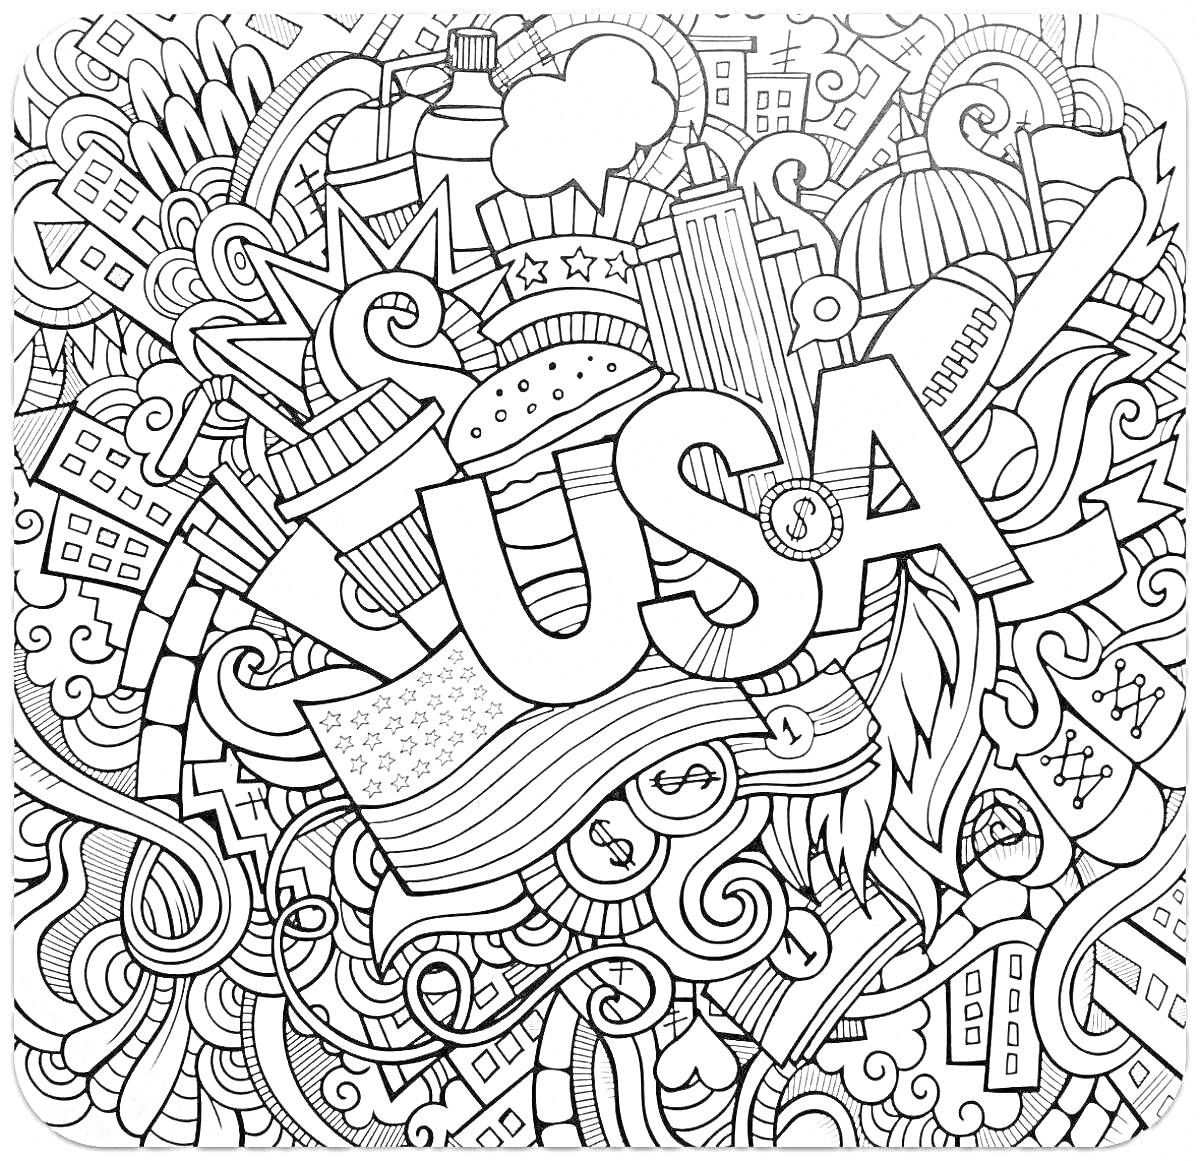 Раскраска USA - городские здания, Статуя Свободы, фейерверки, бургер, бейсбольная бита, американский флаг, перо, облака, звезды